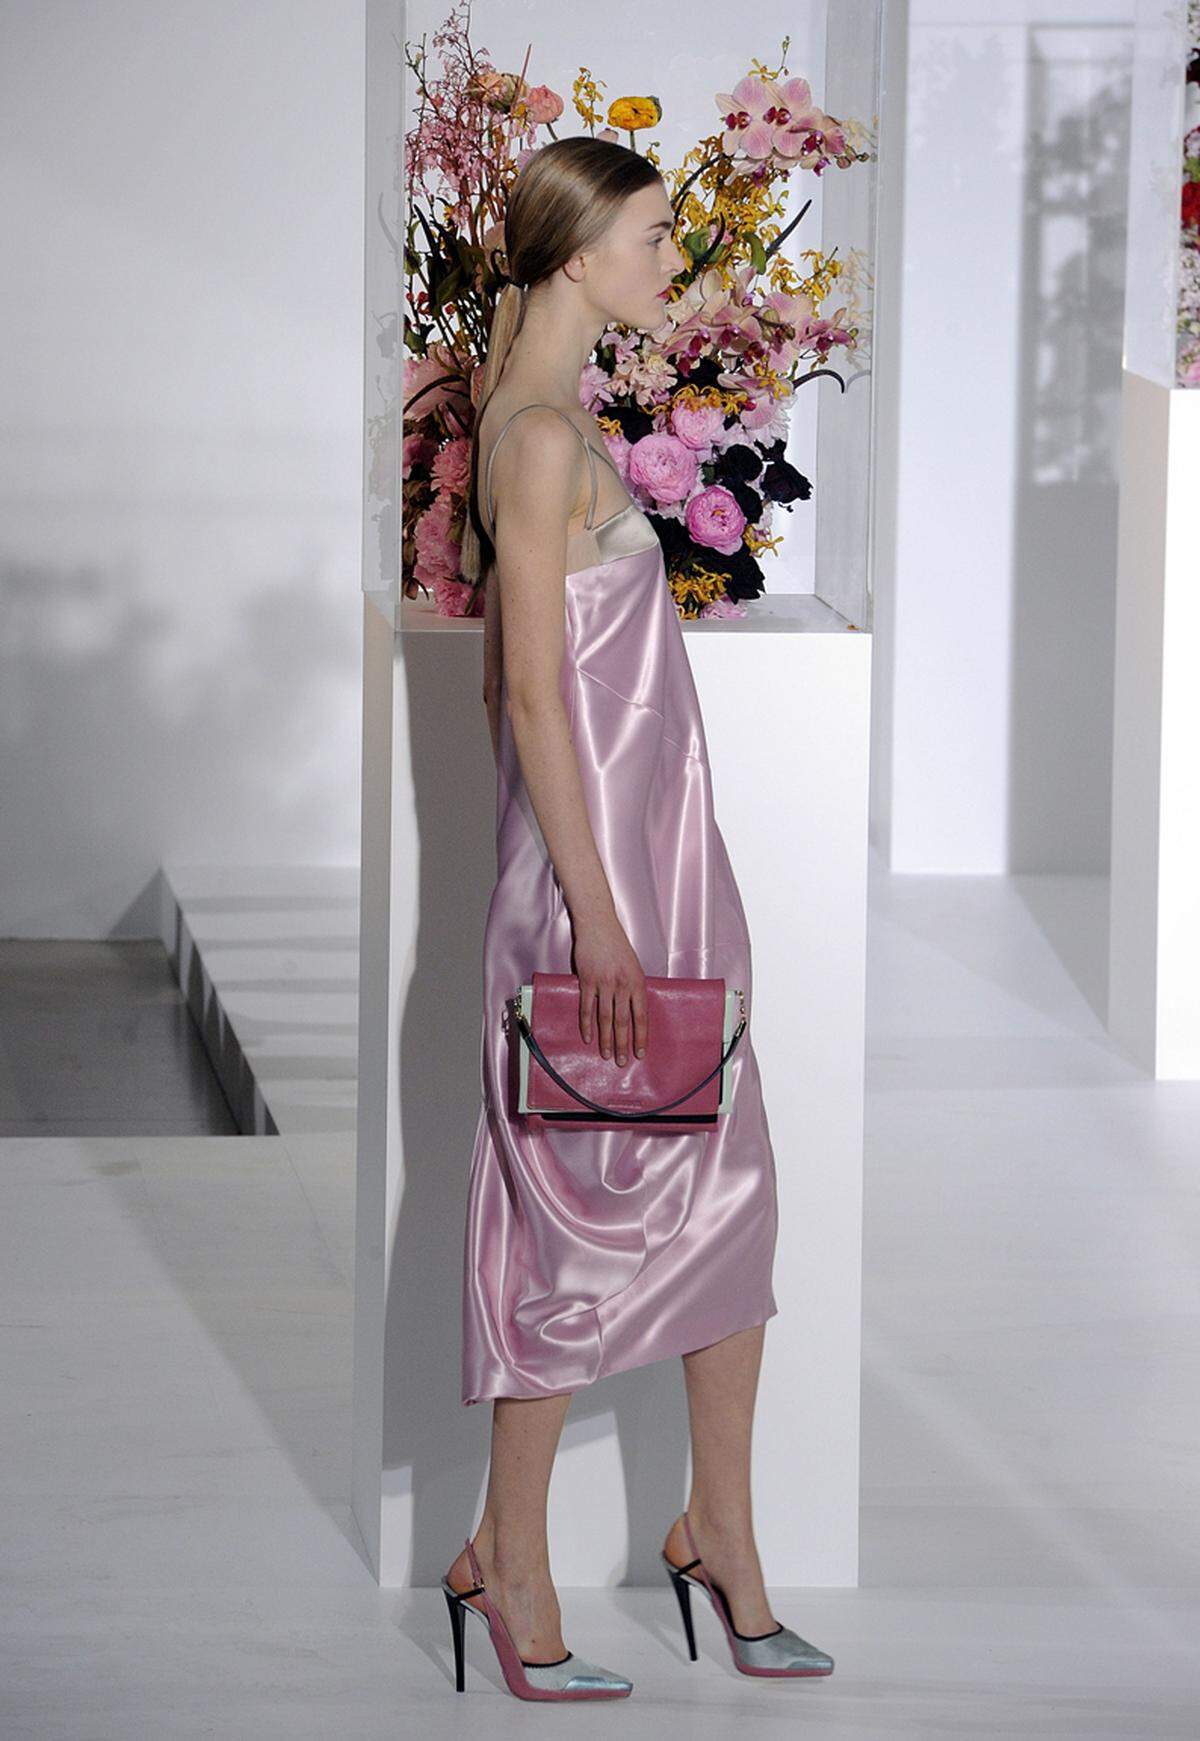 Auf dem mit Blumenbouquets geschmückten Runway präsentierten sich die Models in Pastelltönen, vornehmlich Rosanuancen.